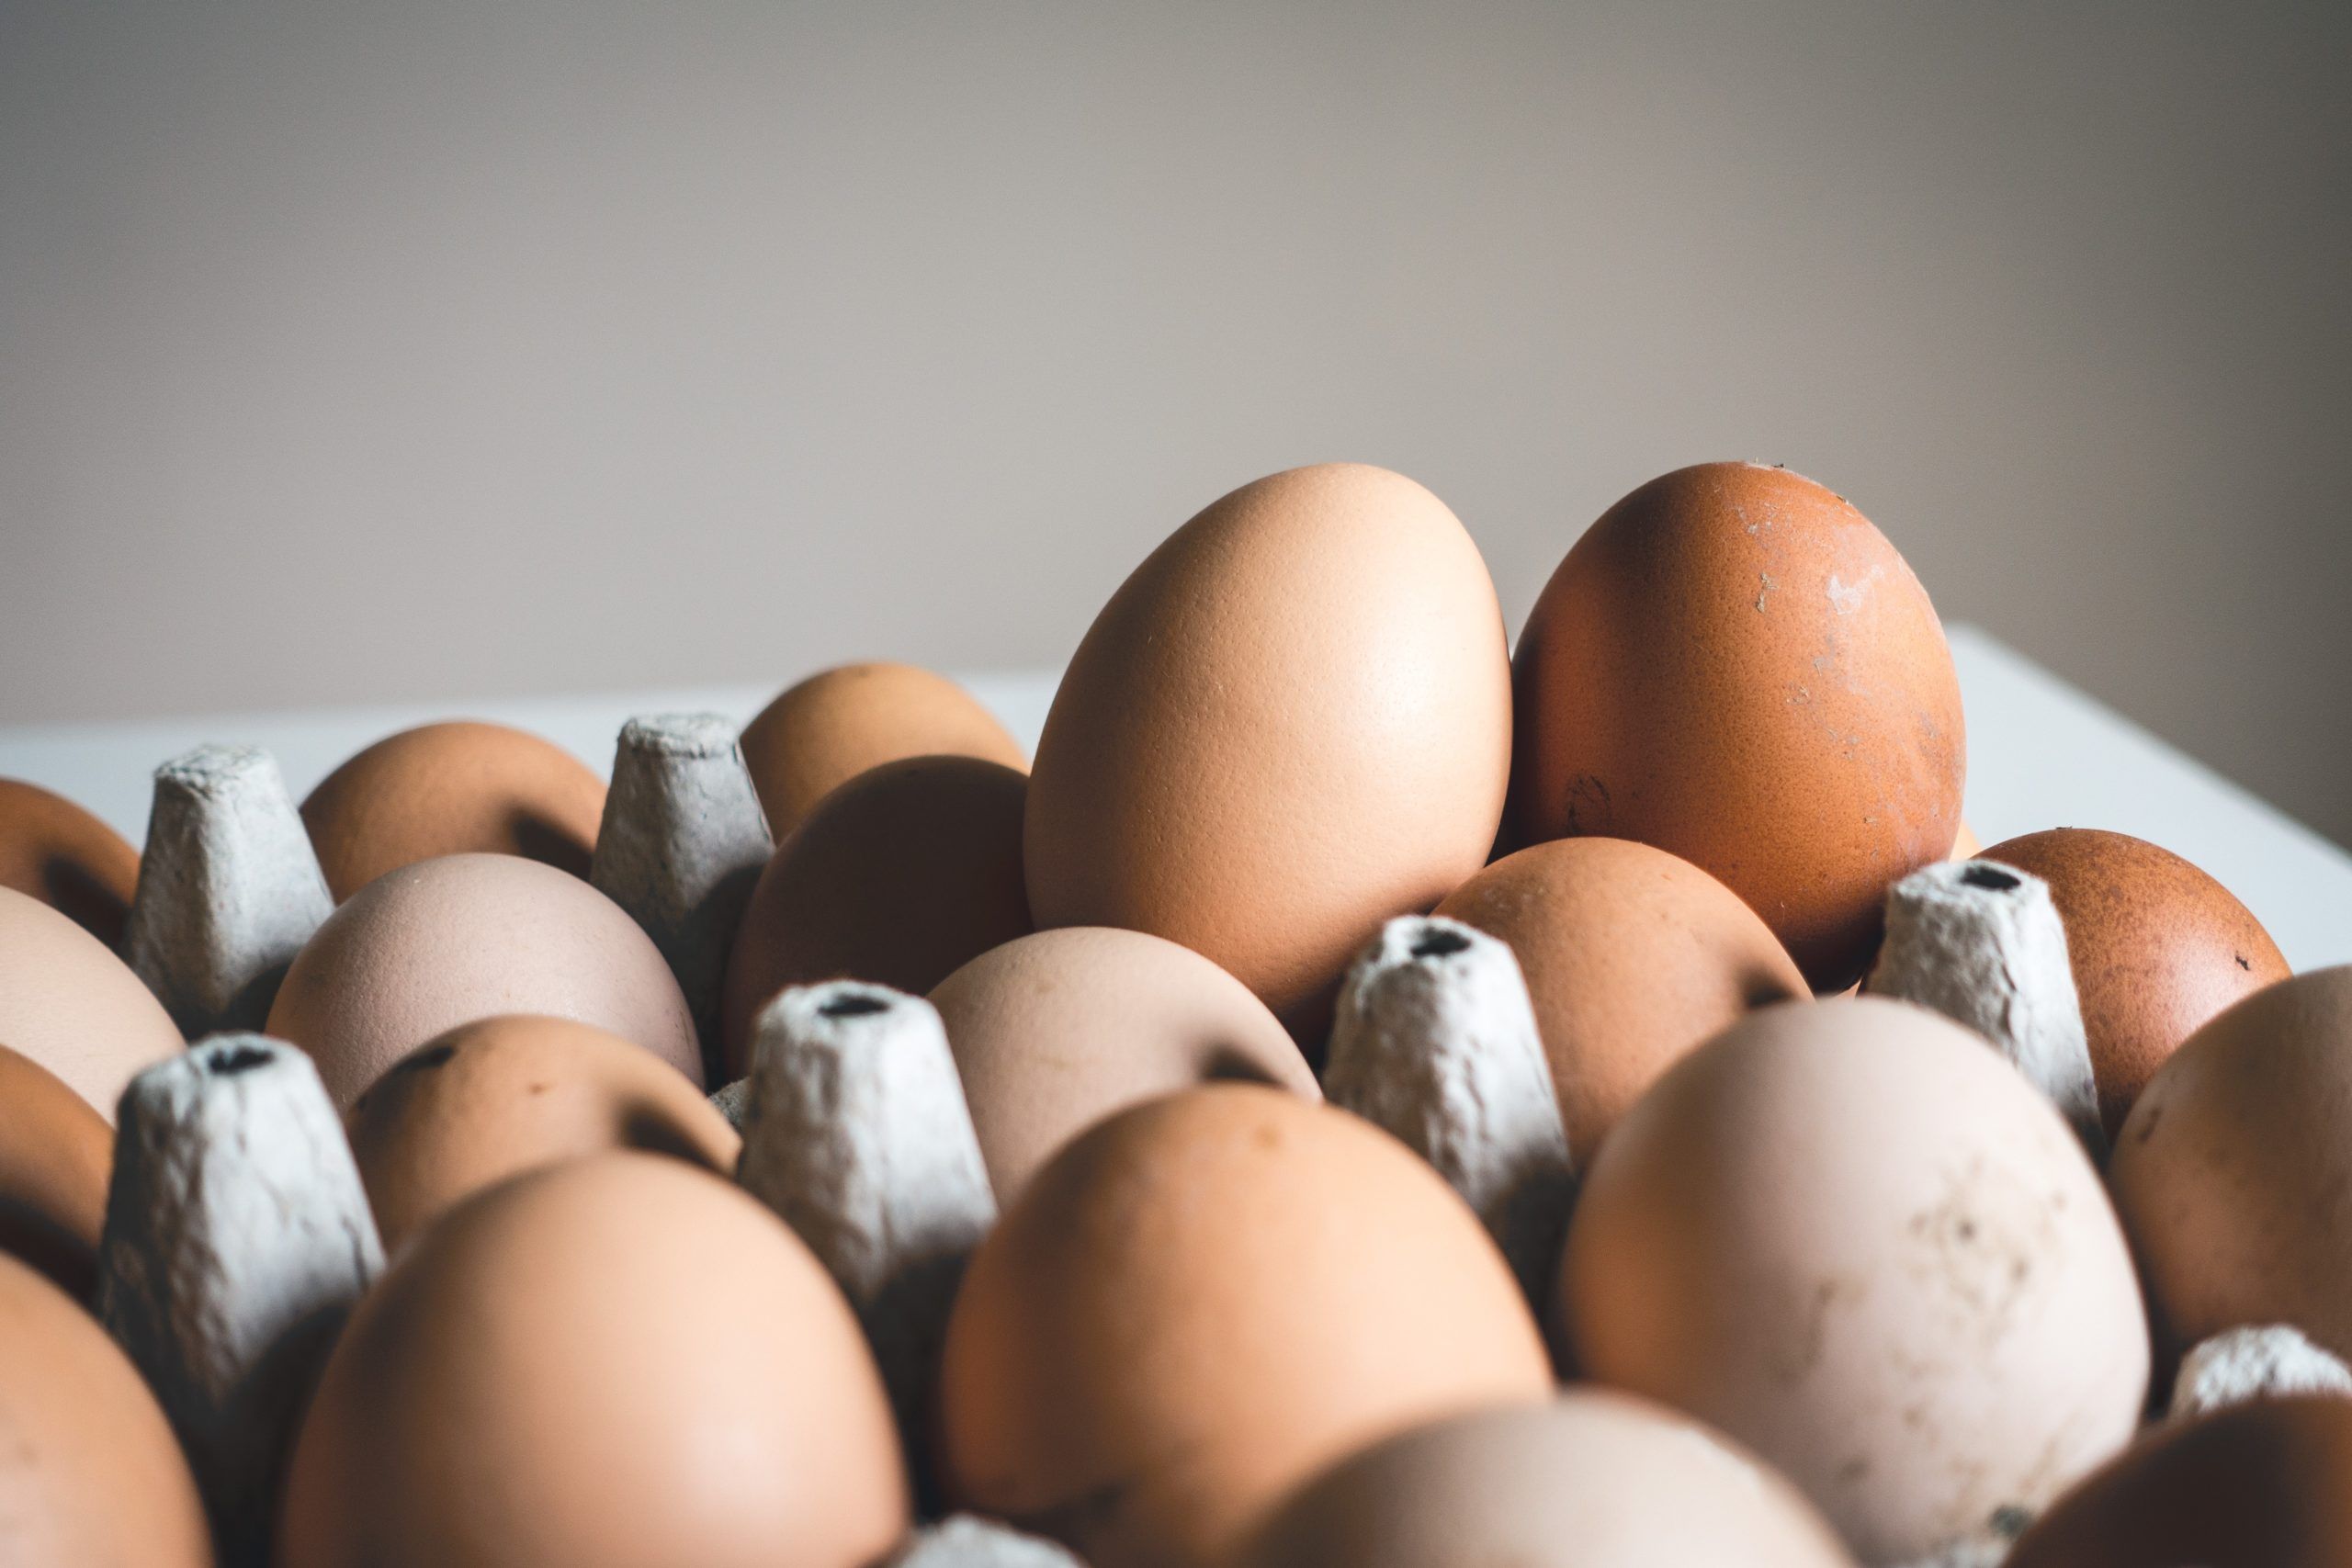 Se dispara precio del huevo por baja producción, abuso y acaparamiento